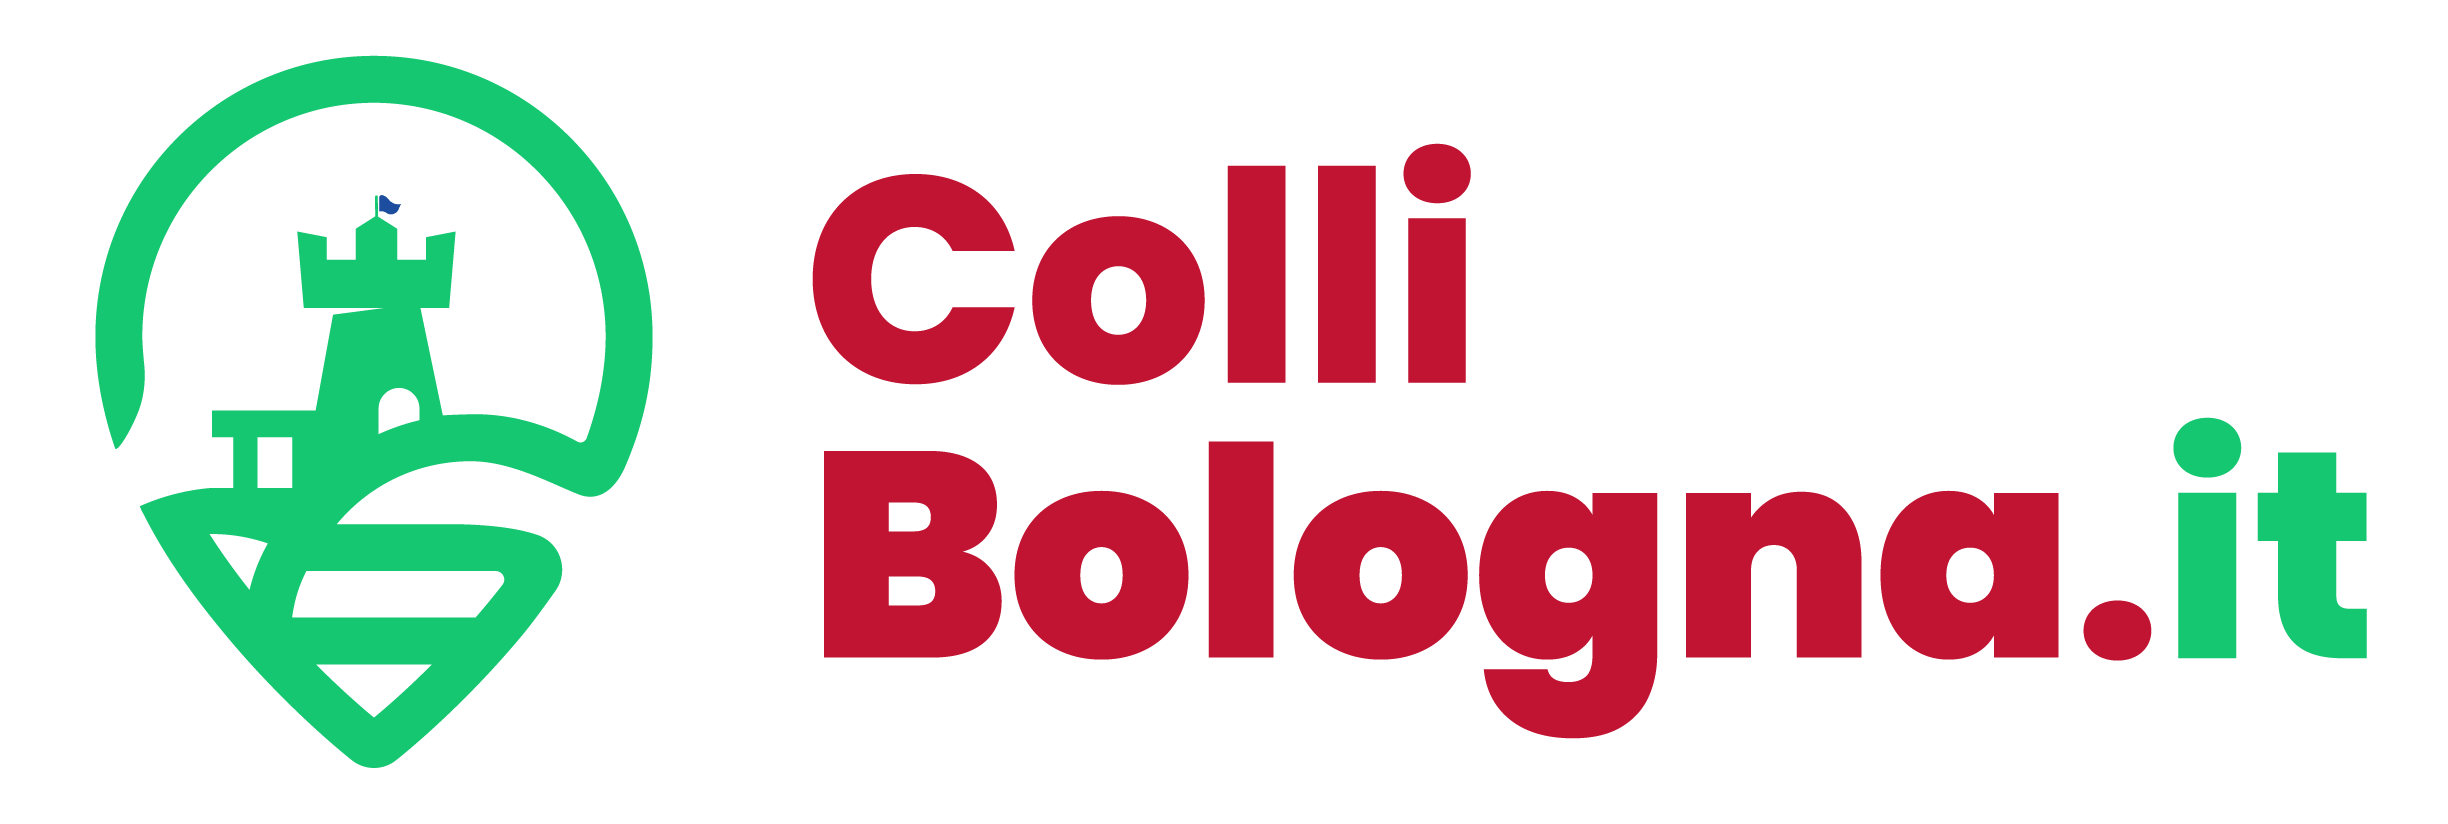 Collibologna.it